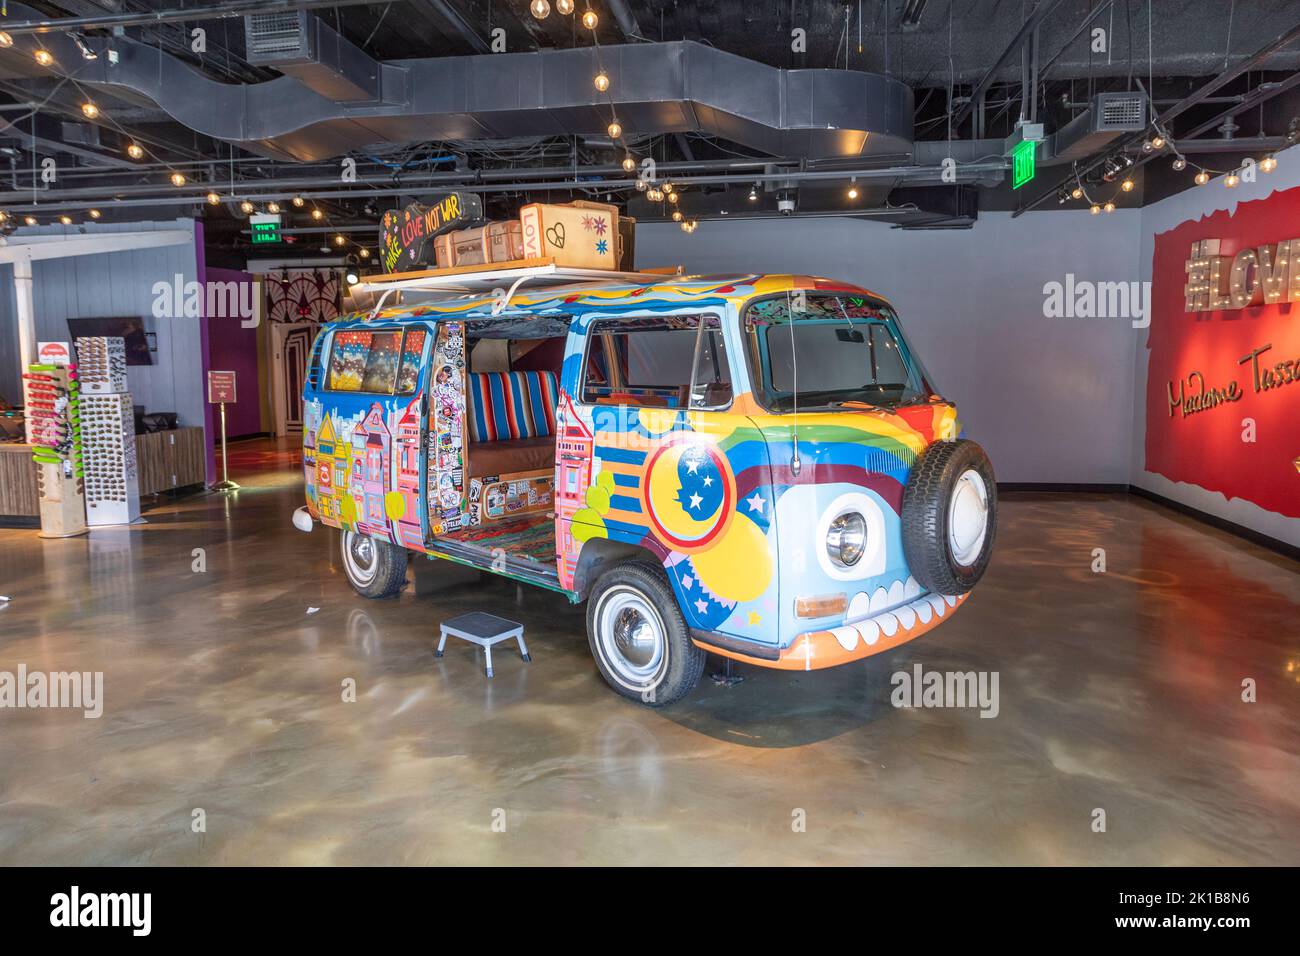 San Francisco, Etats-Unis - 7 juin 2022: Vieux VW bouly peint dans le style hippie des années soixante à l'entrée de Madame Toussauts cabinet. Banque D'Images